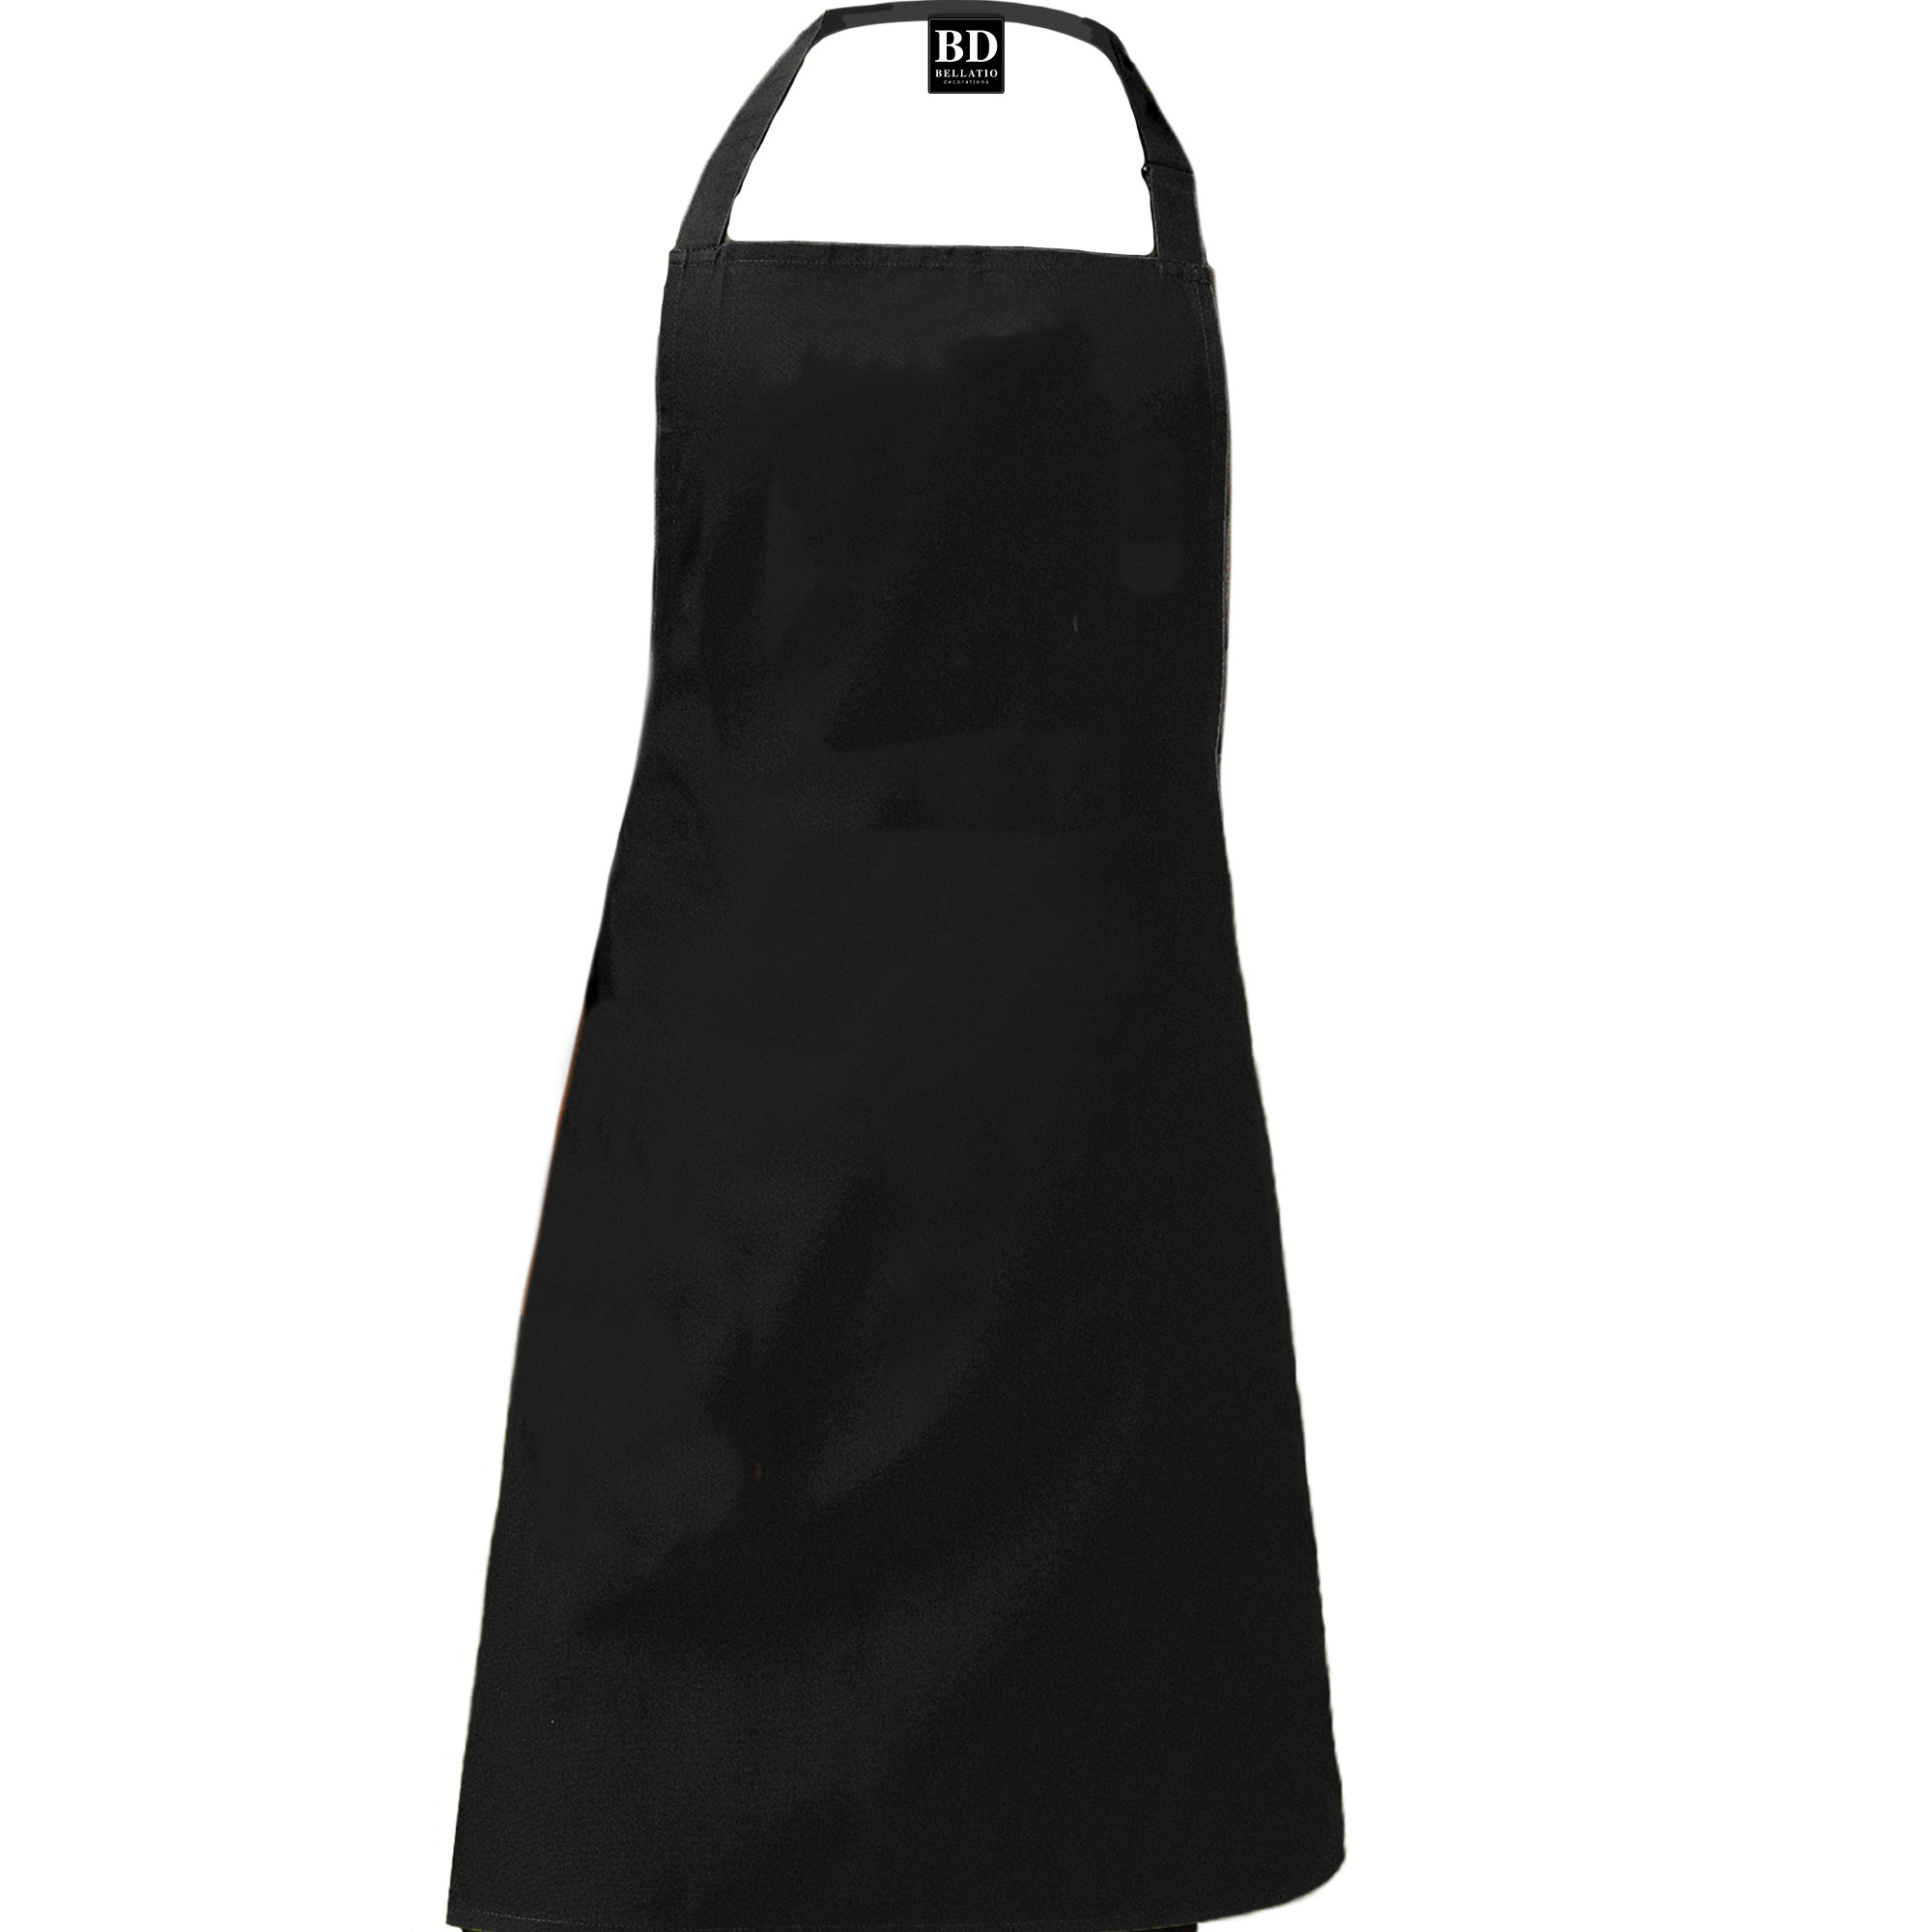 Griller barbecueschort/ keukenschort zwart heren  - Action products